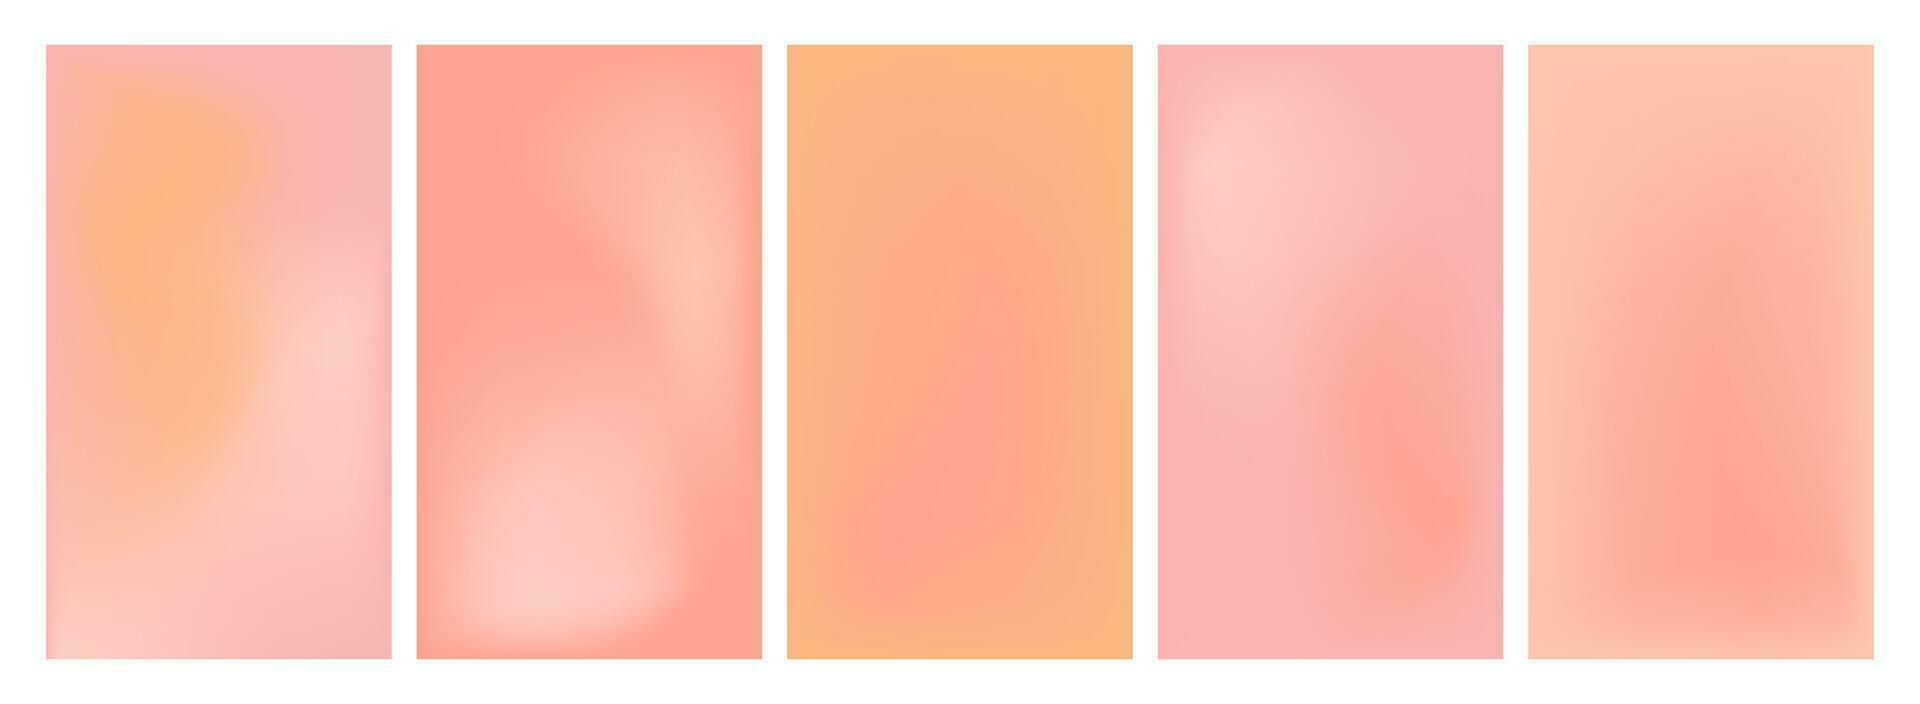 uppsättning av persika trädgårdar. mjuk pastell bakgrund för hjärtans dag. vektor